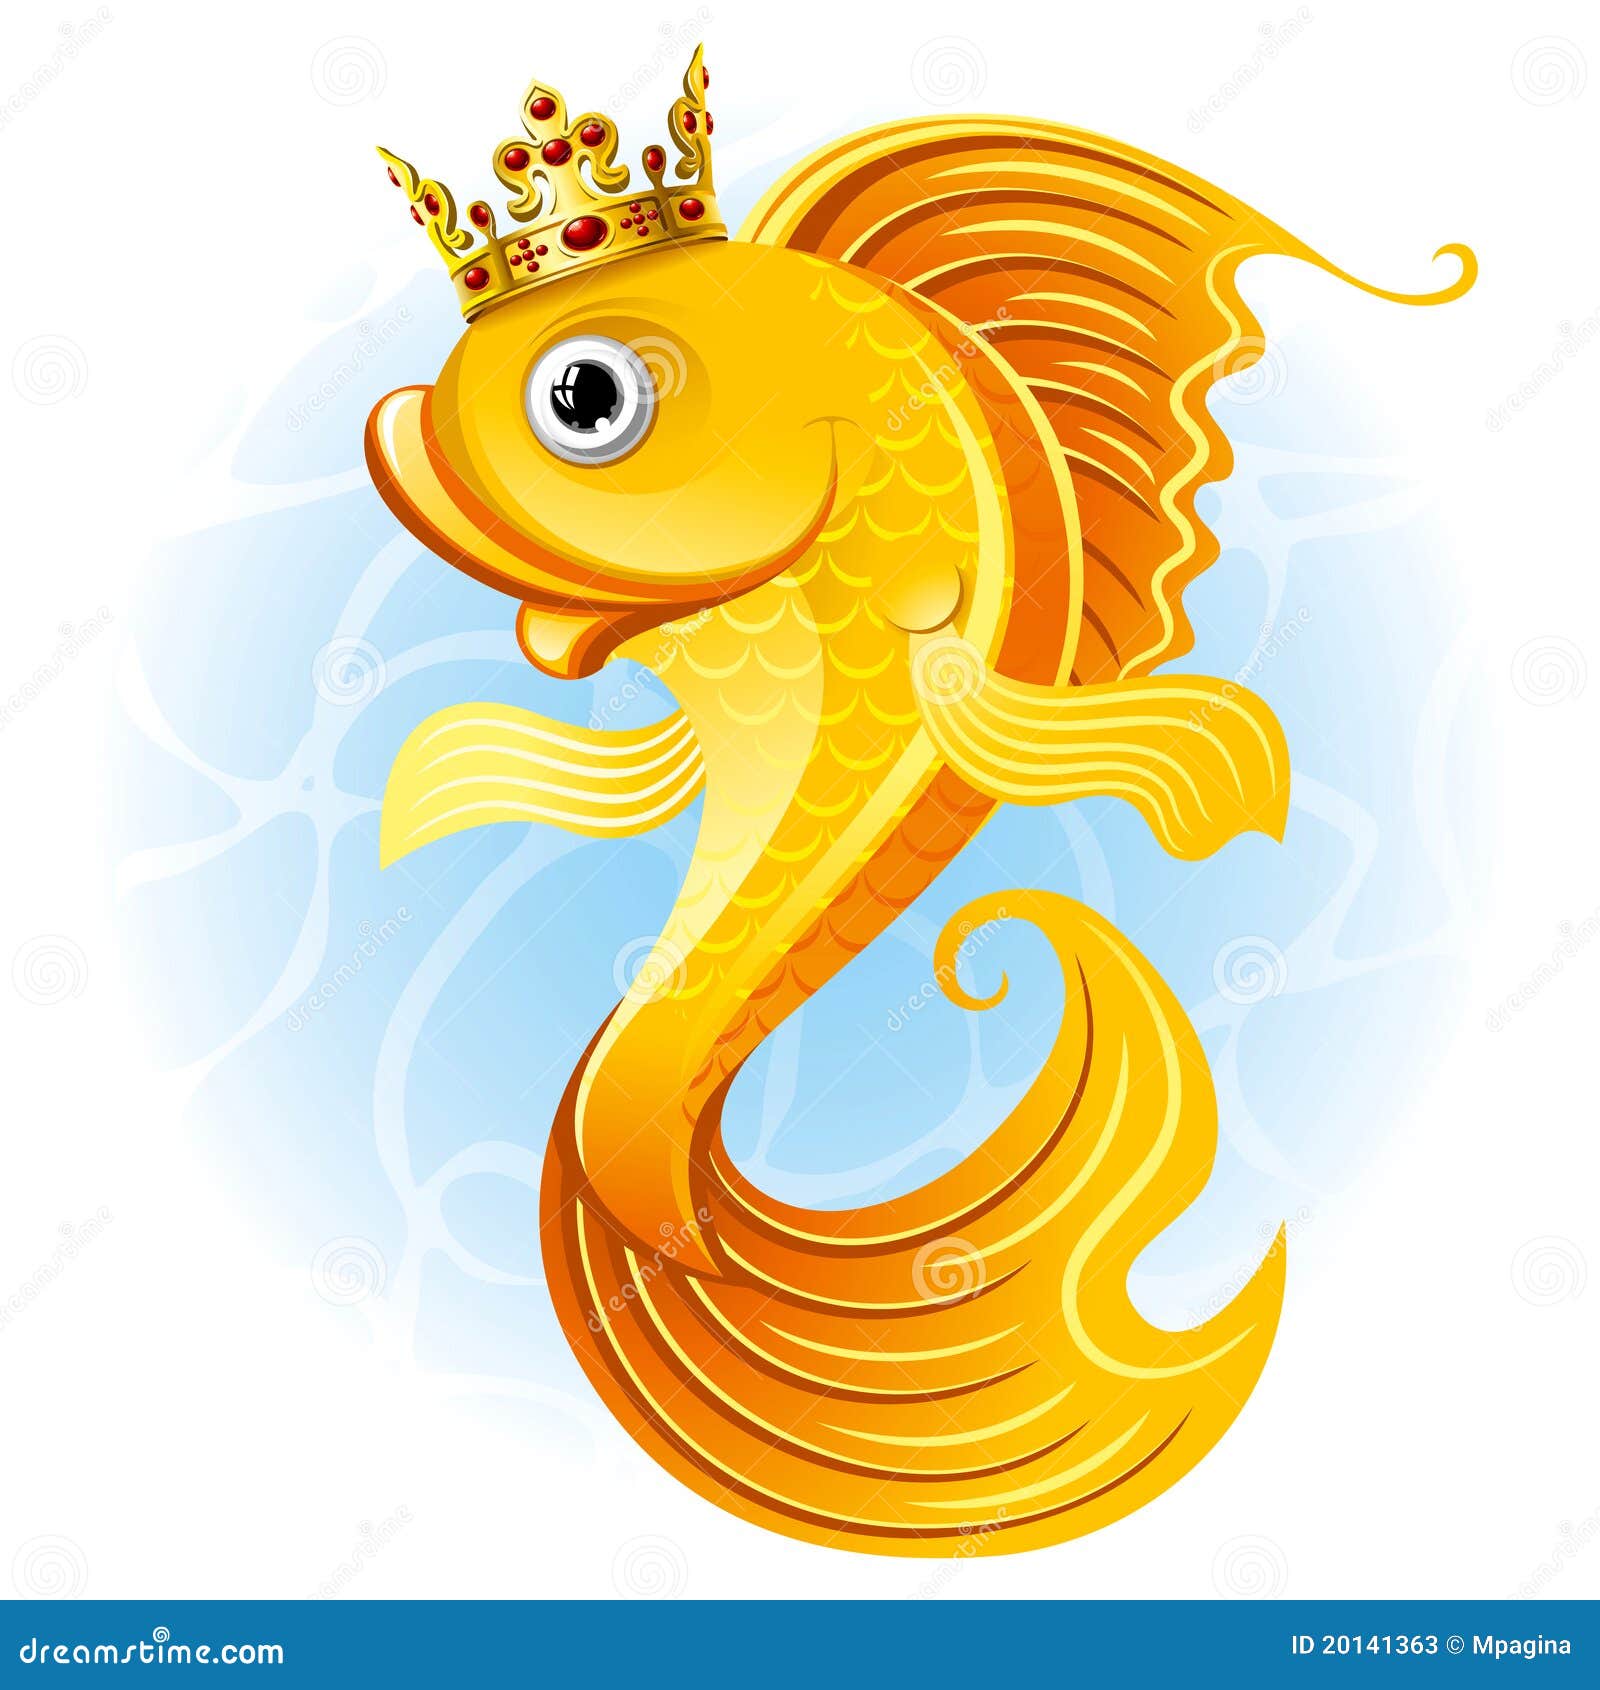 Magic Goldfish Stock Illustrations – 418 Magic Goldfish Stock  Illustrations, Vectors & Clipart - Dreamstime